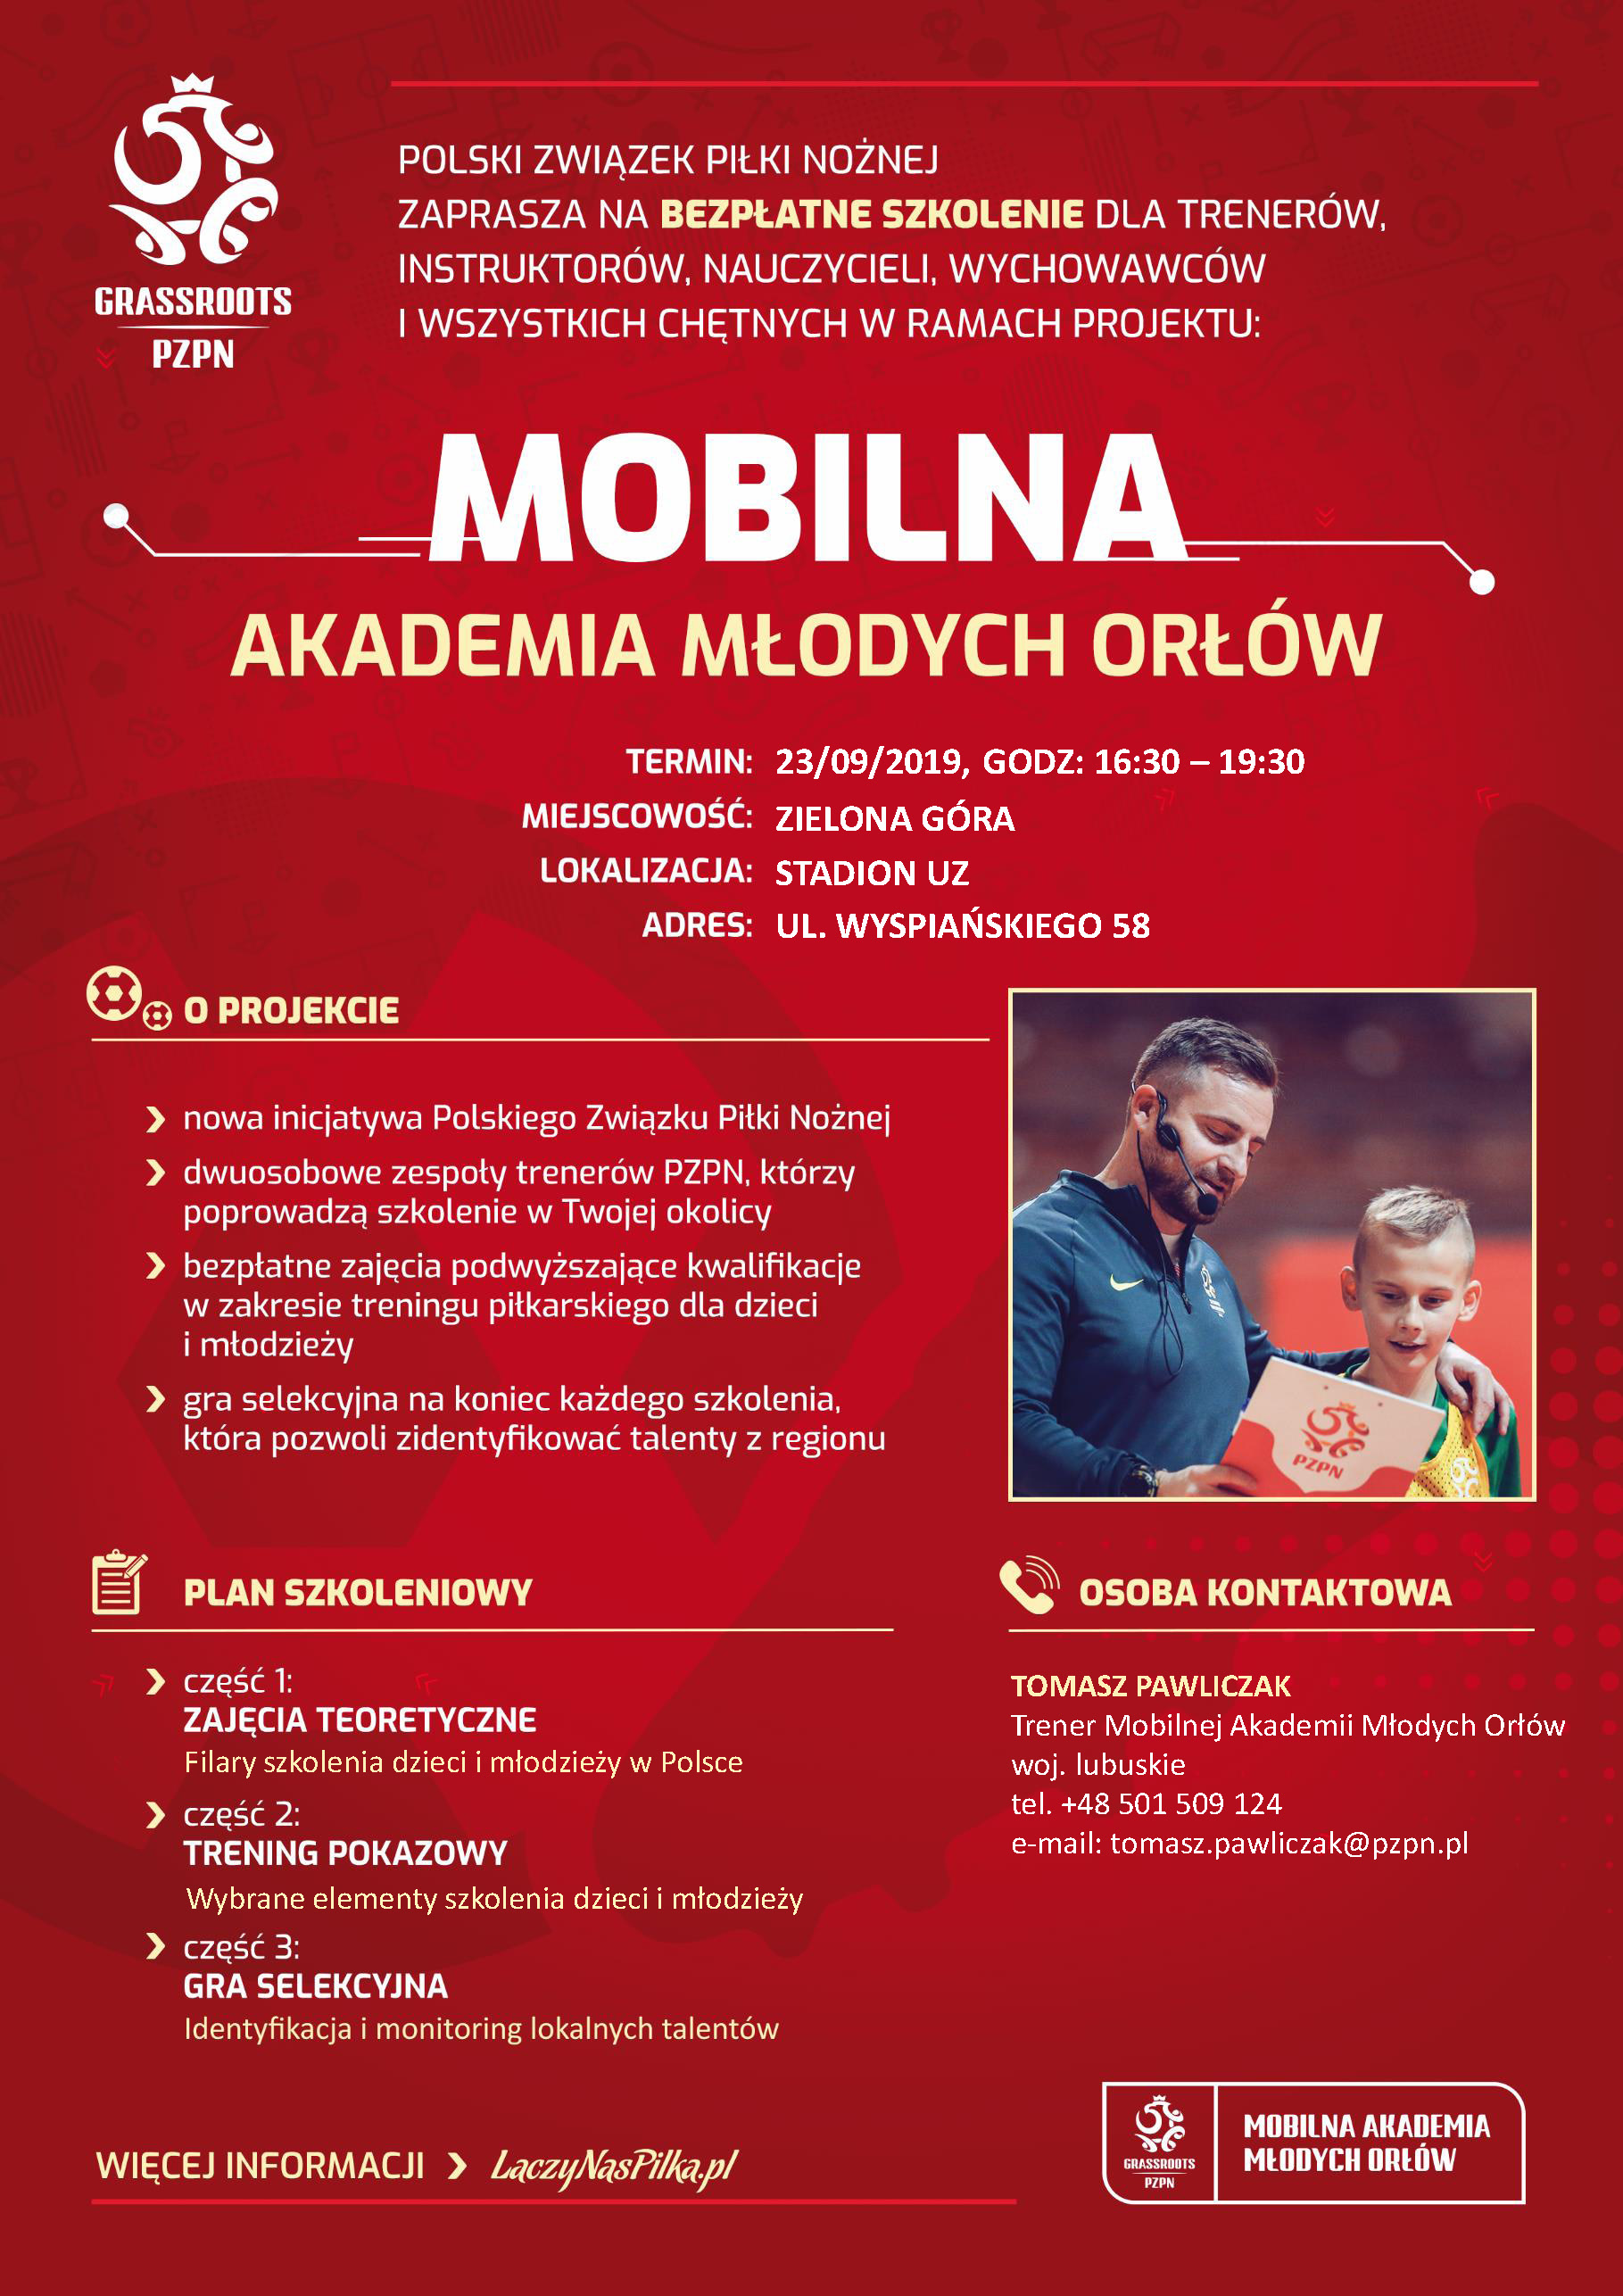 Szkolenie Mobilnego AMO - ZIELONA GÓRA, 23.09.2019.jpg